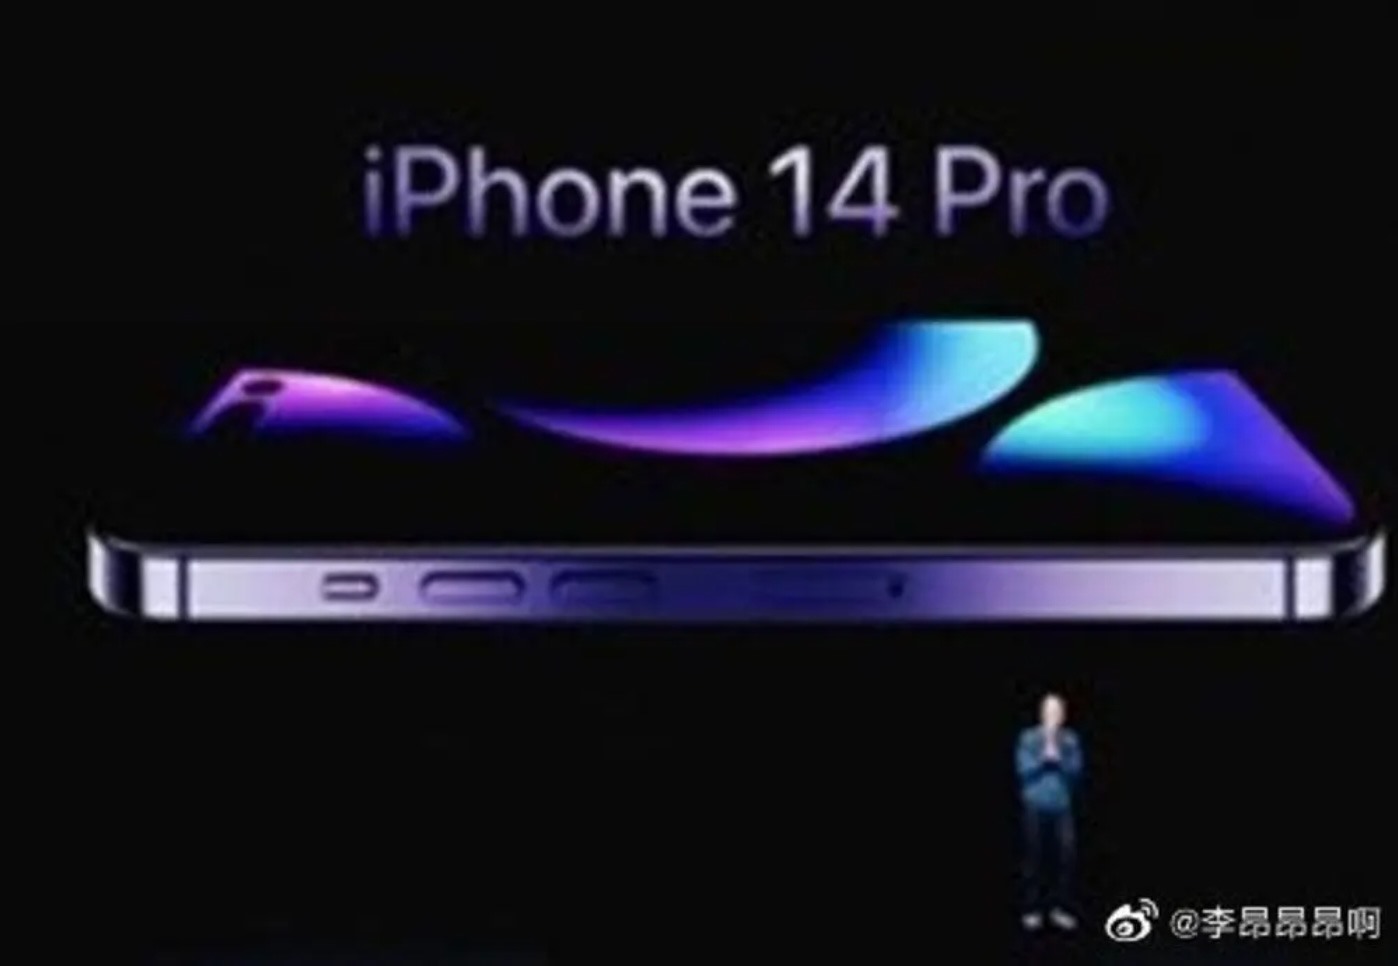 Bức ảnh chụp giám đốc Tim Cook giới thiệu chiếc iPhone 14 Pro đã bị rò rỉ và tràn lan trên mạng chỉ một ngày trước khi sự kiện ra mắt bắt đầu. Ảnh chụp màn hình